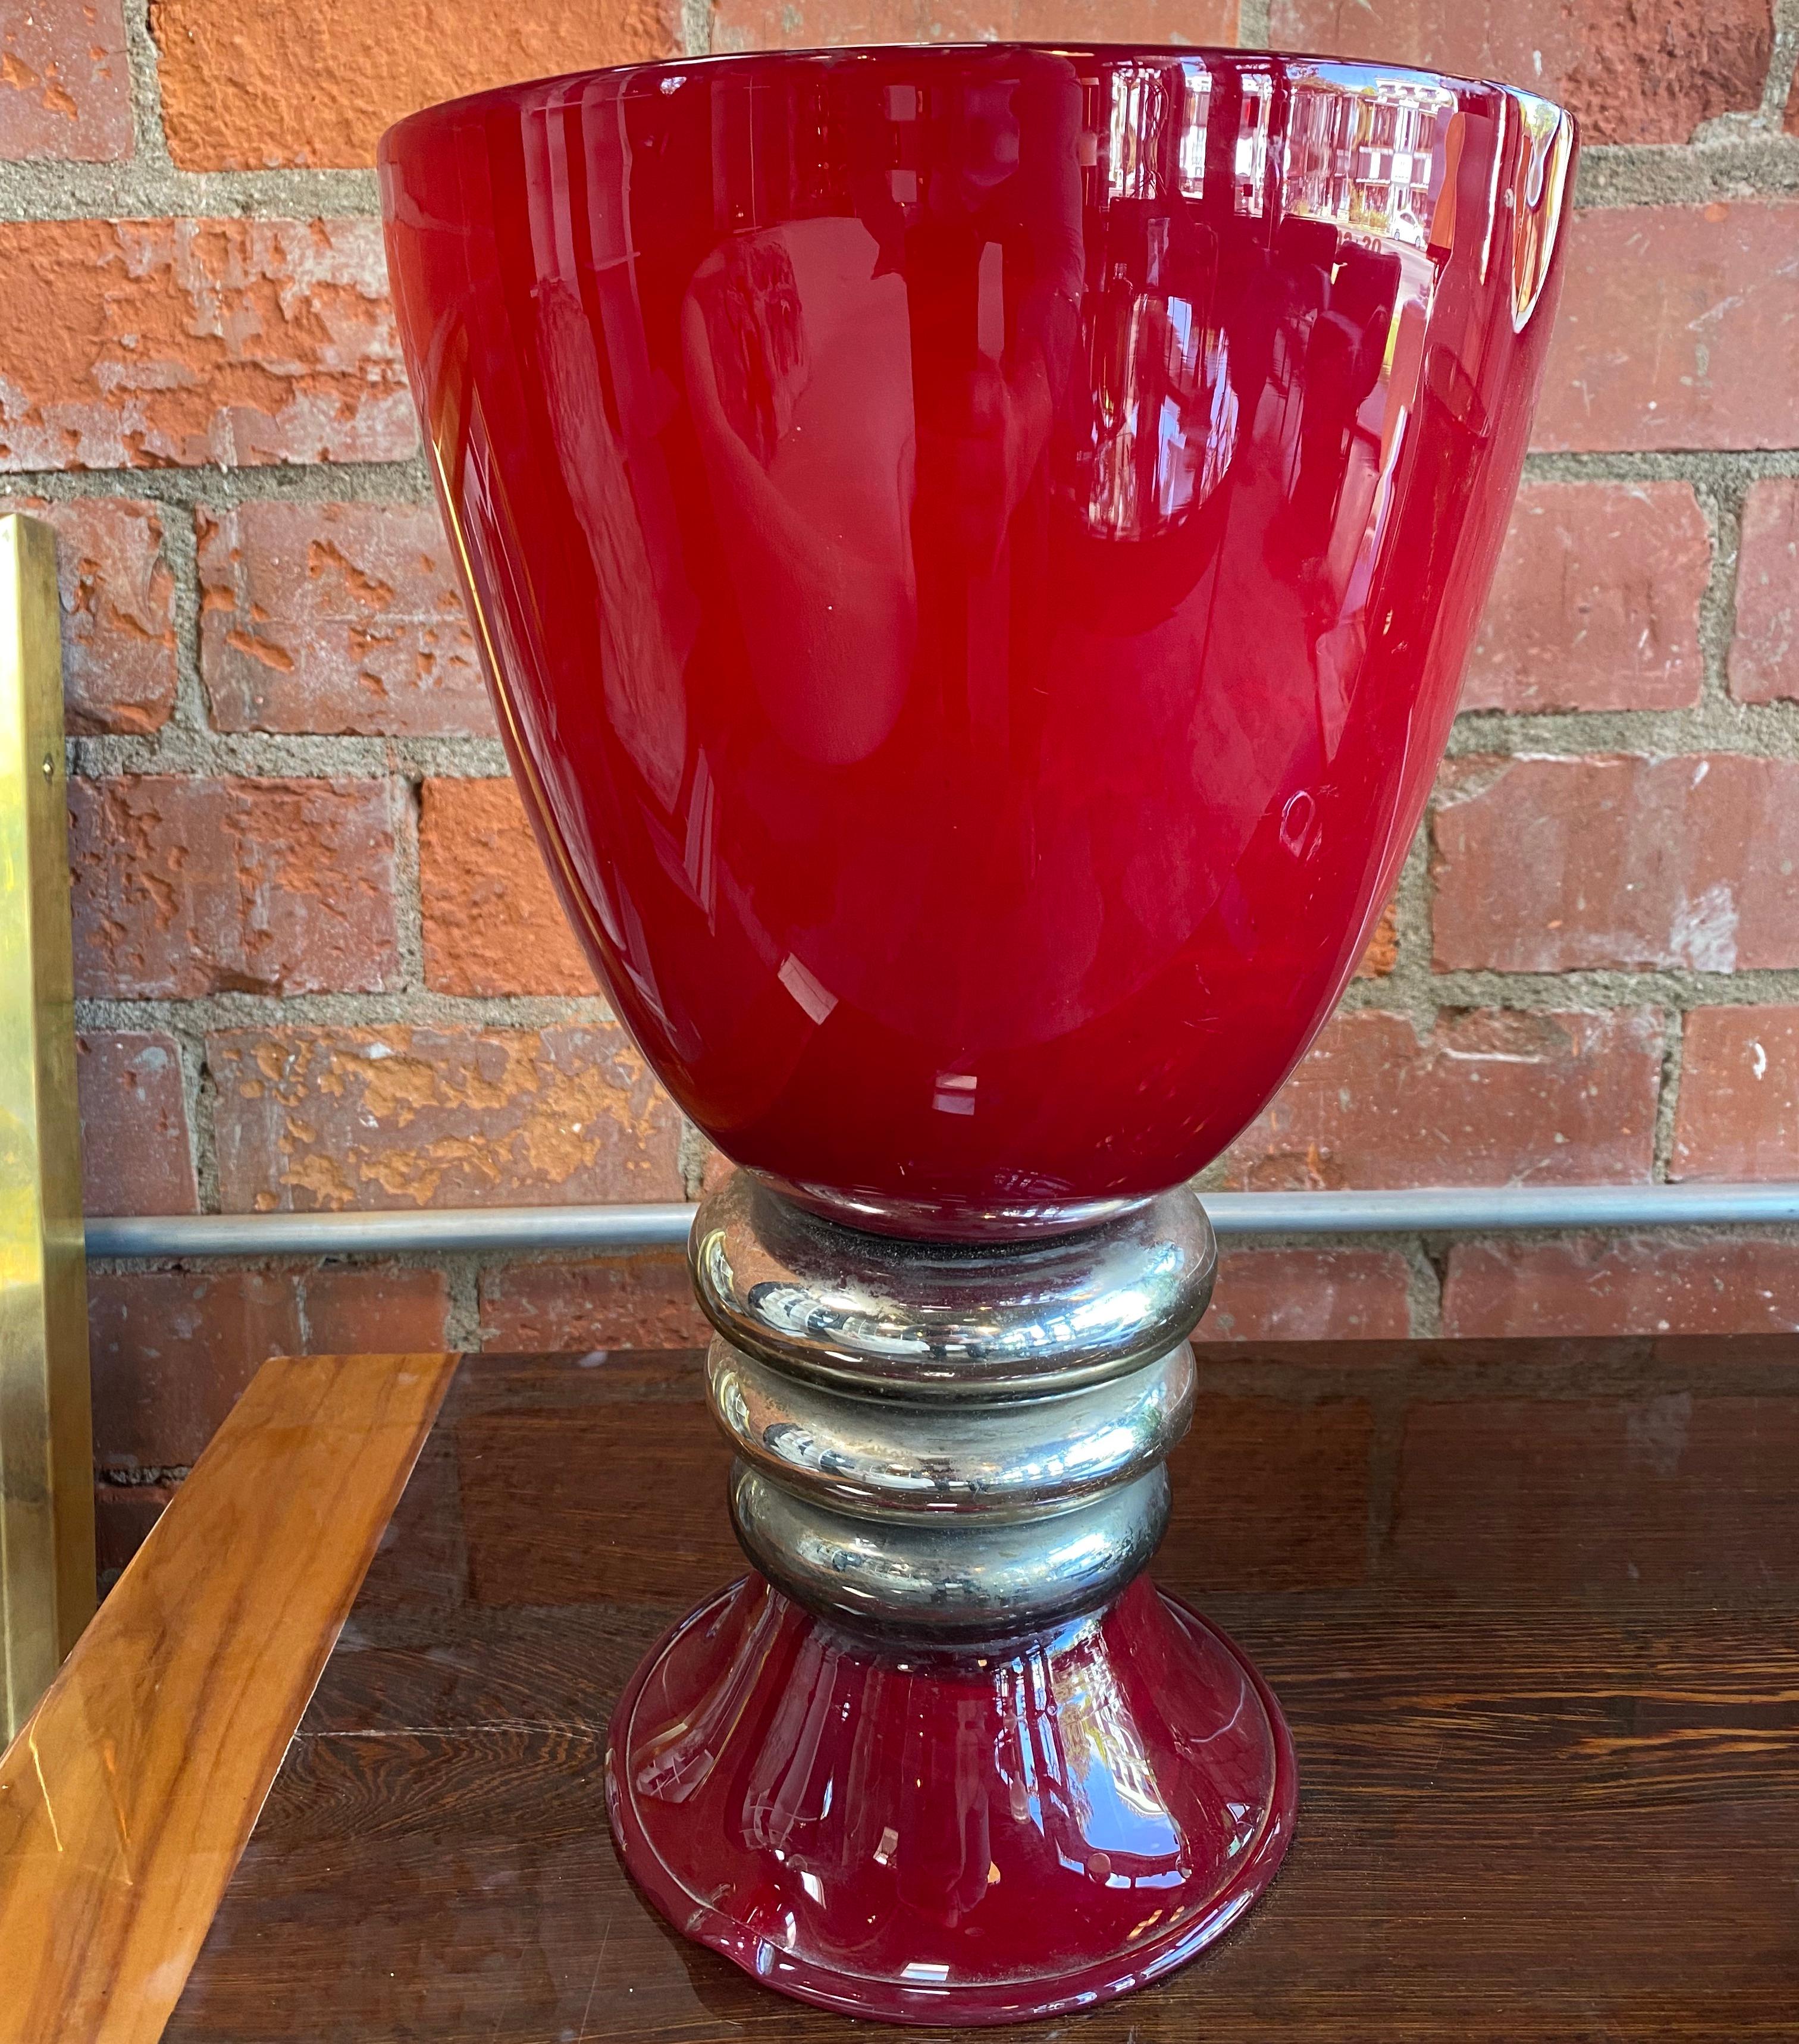 Belle lampe de table italienne rouge faite avec un tonneau en miroir rouge et des sels d'or.
La lampe de table est une pièce étonnante avec une forme incroyable.
Un article élégant et simple qui complétera un salon ou un bureau du milieu du siècle.